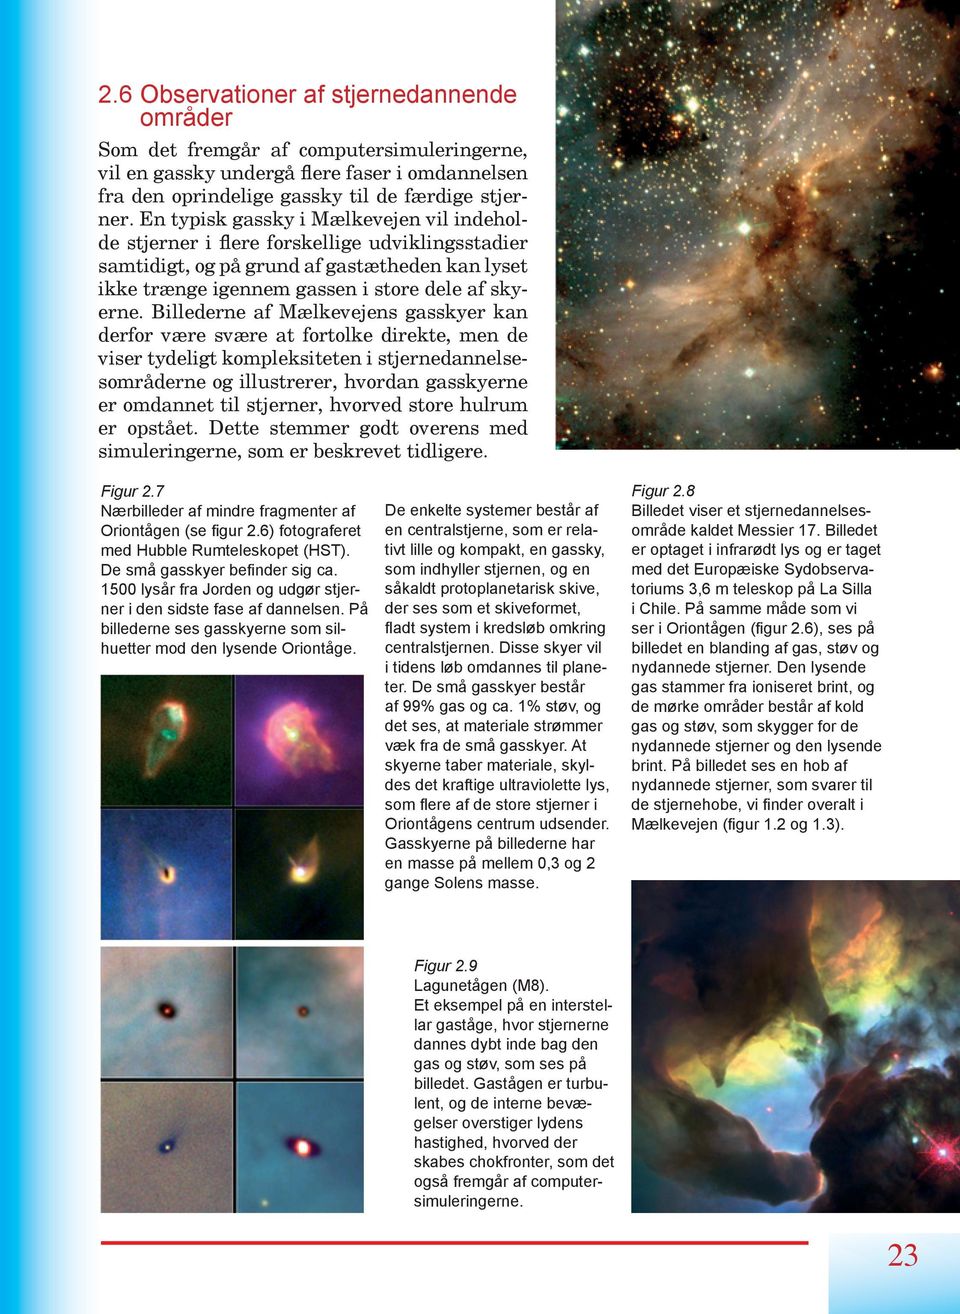 Billederne af Mælkevejens gasskyer kan derfor være svære at fortolke direkte, men de viser tydeligt kompleksiteten i stjernedannelsesområderne og illustrerer, hvordan gasskyerne er omdannet til